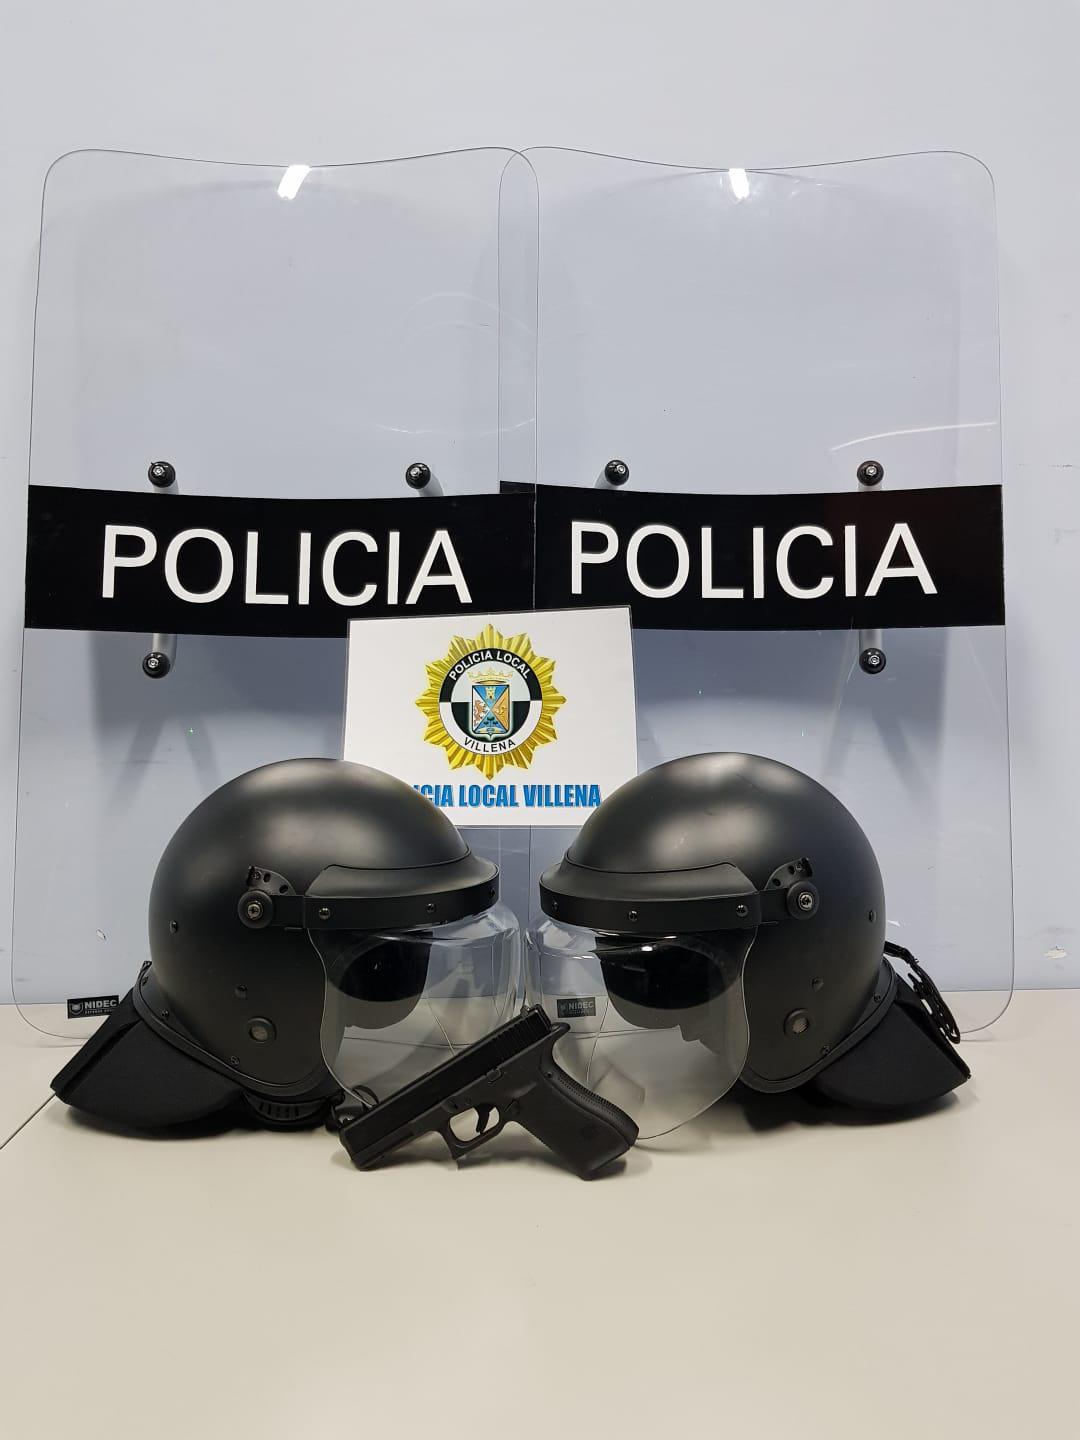 La Policía Local de Villena adquiere material de defensa y autoprotección